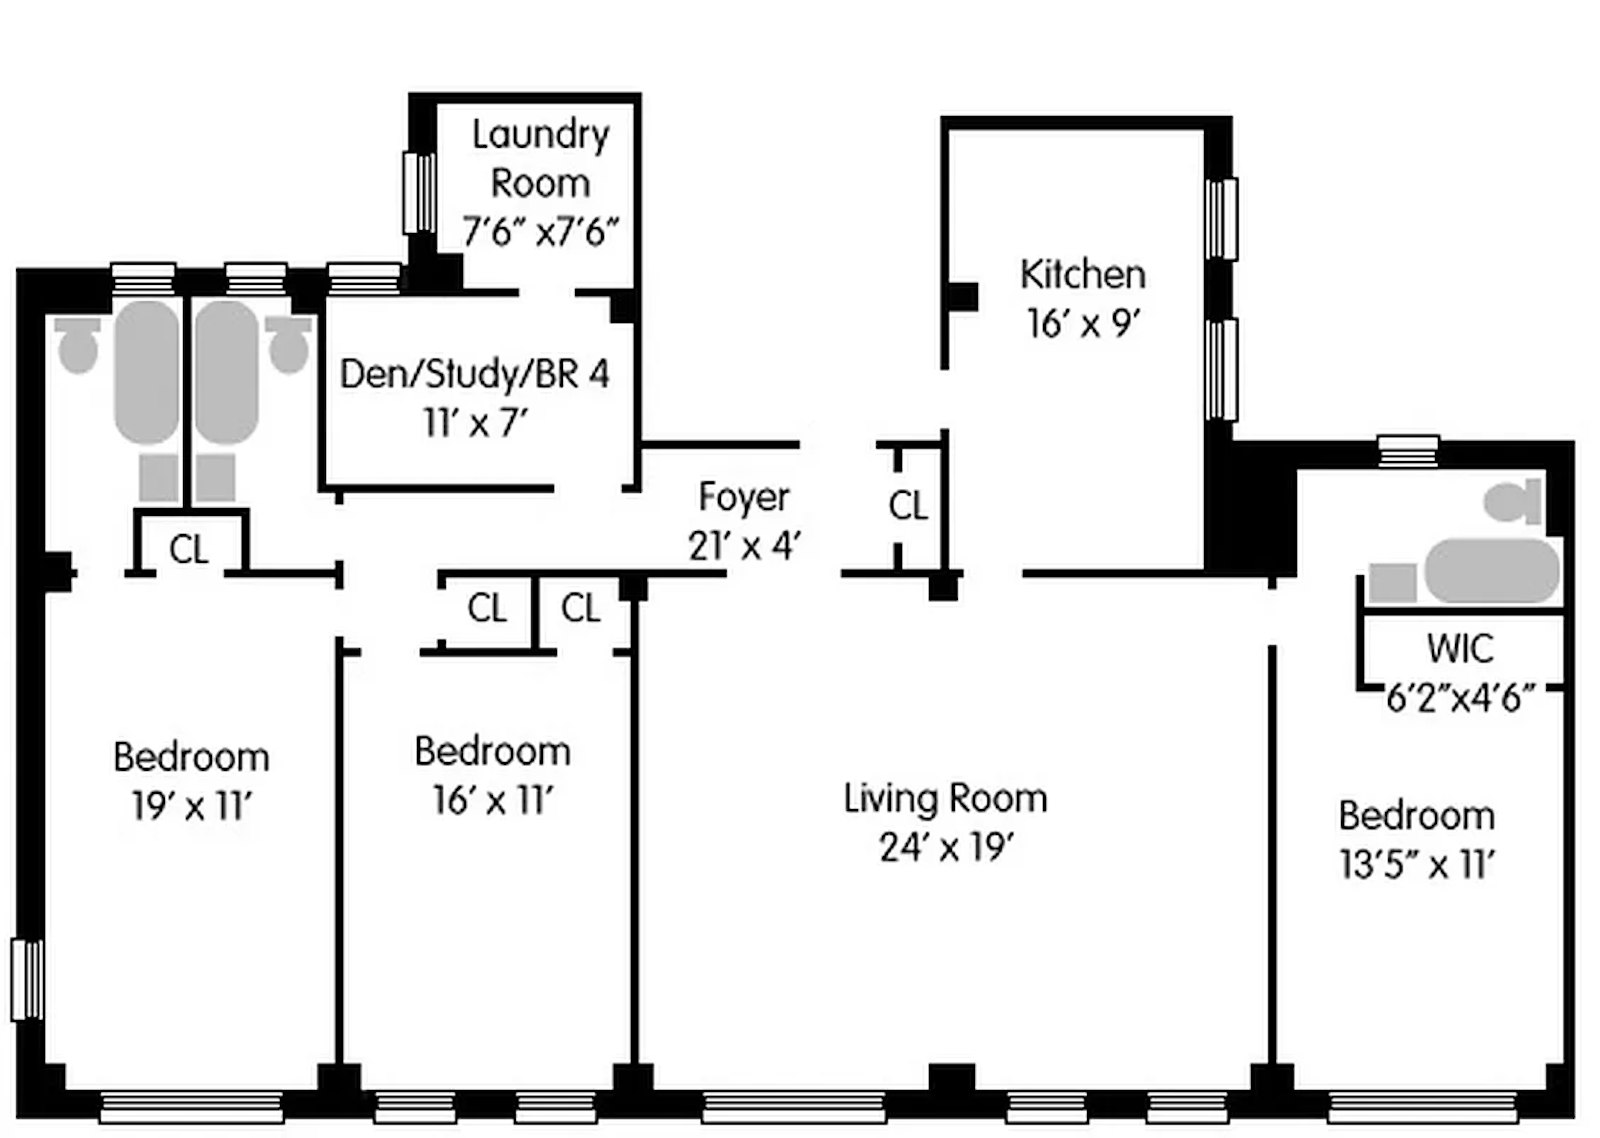 Floorplan for 155 East 91st Street, 5AB